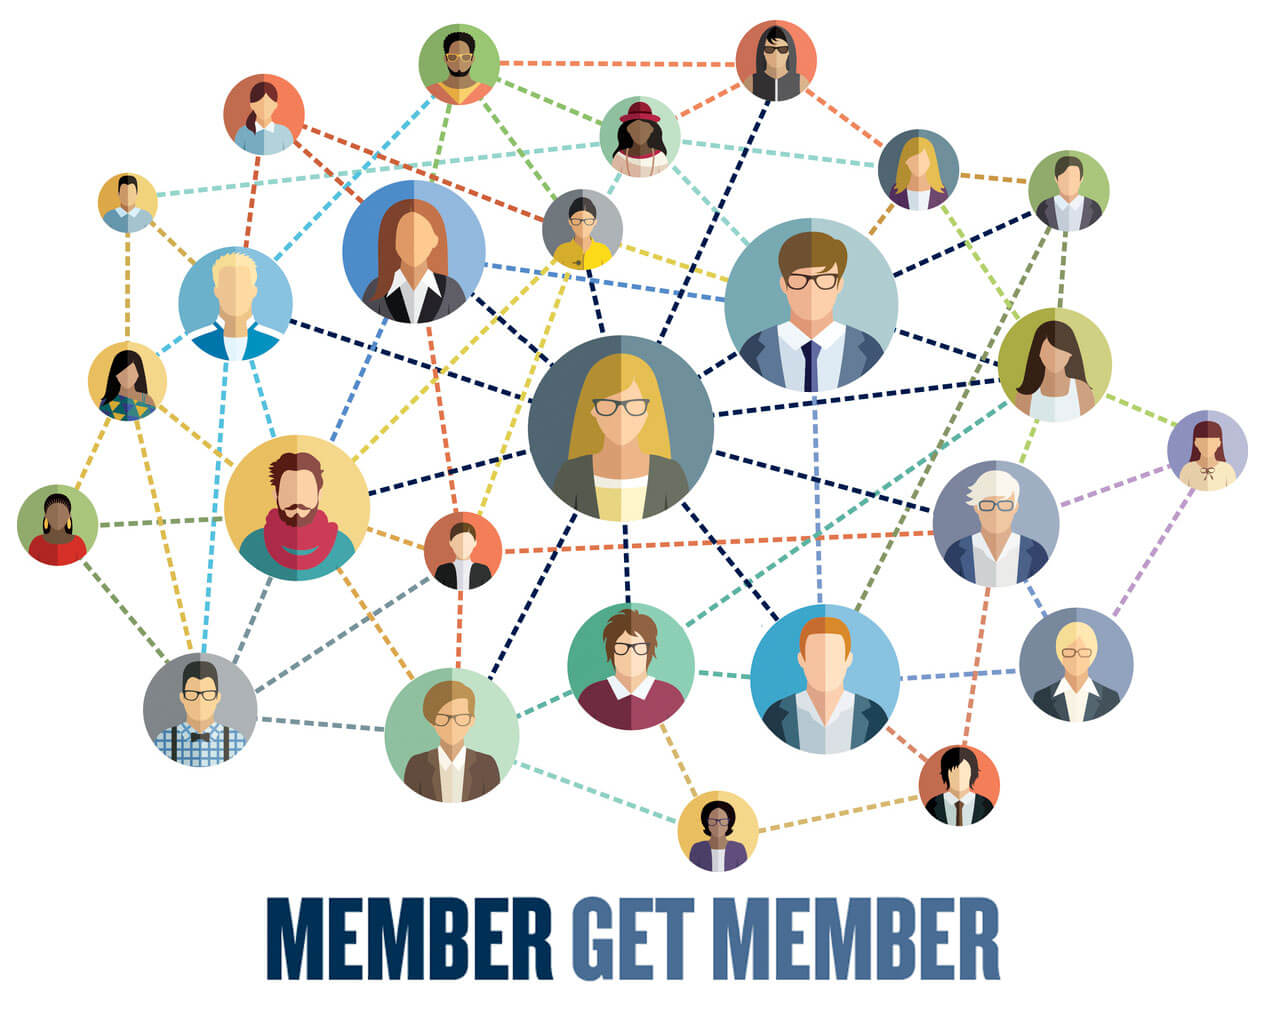 Member get member